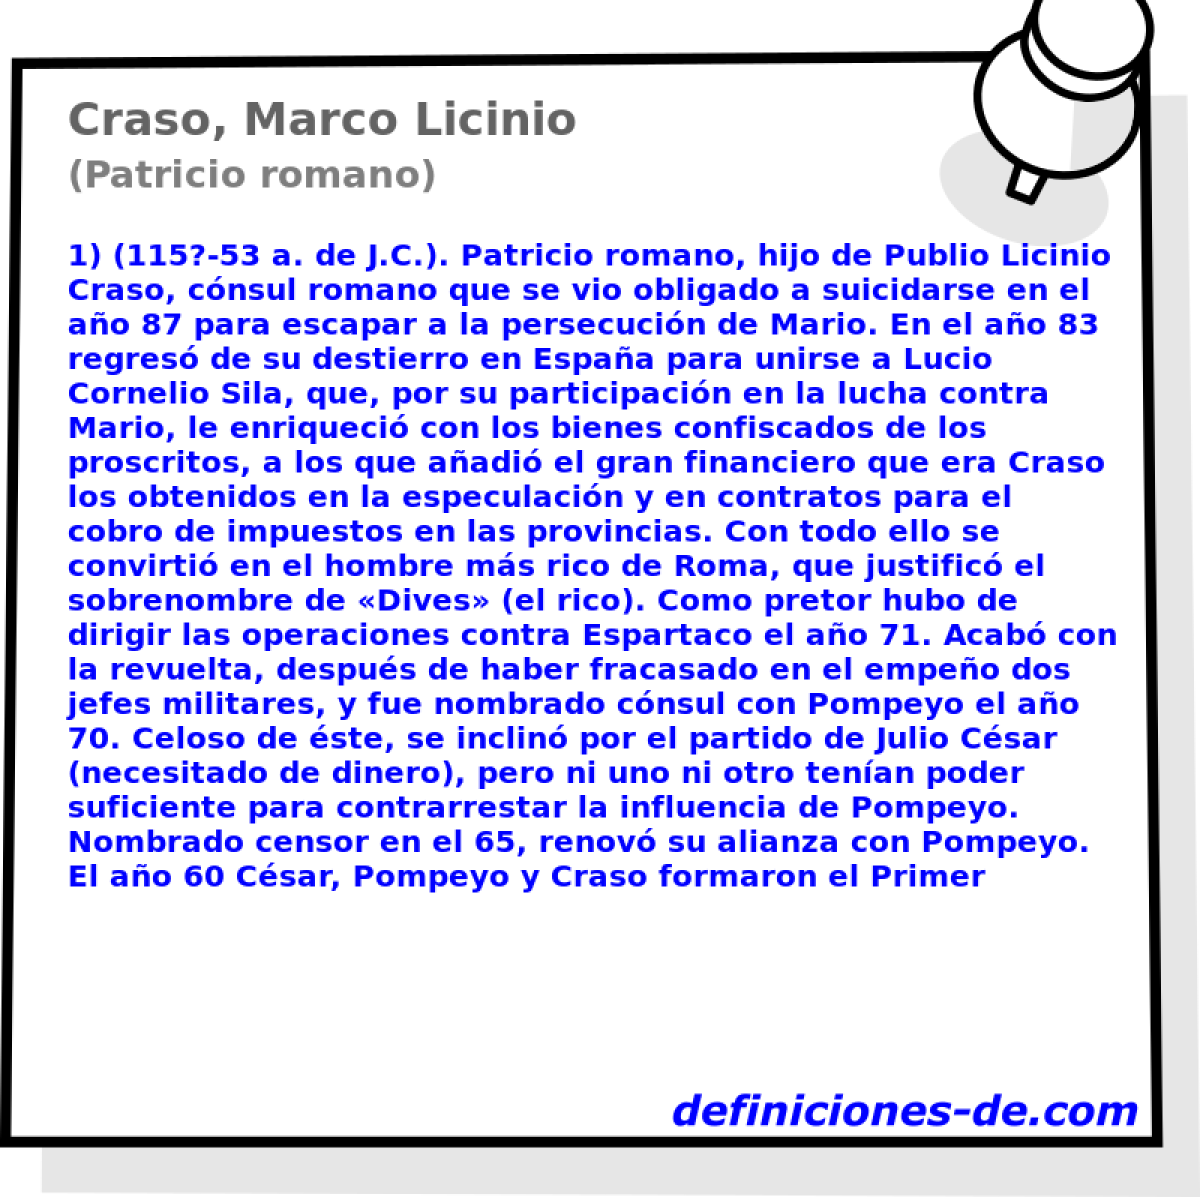 Craso, Marco Licinio (Patricio romano)